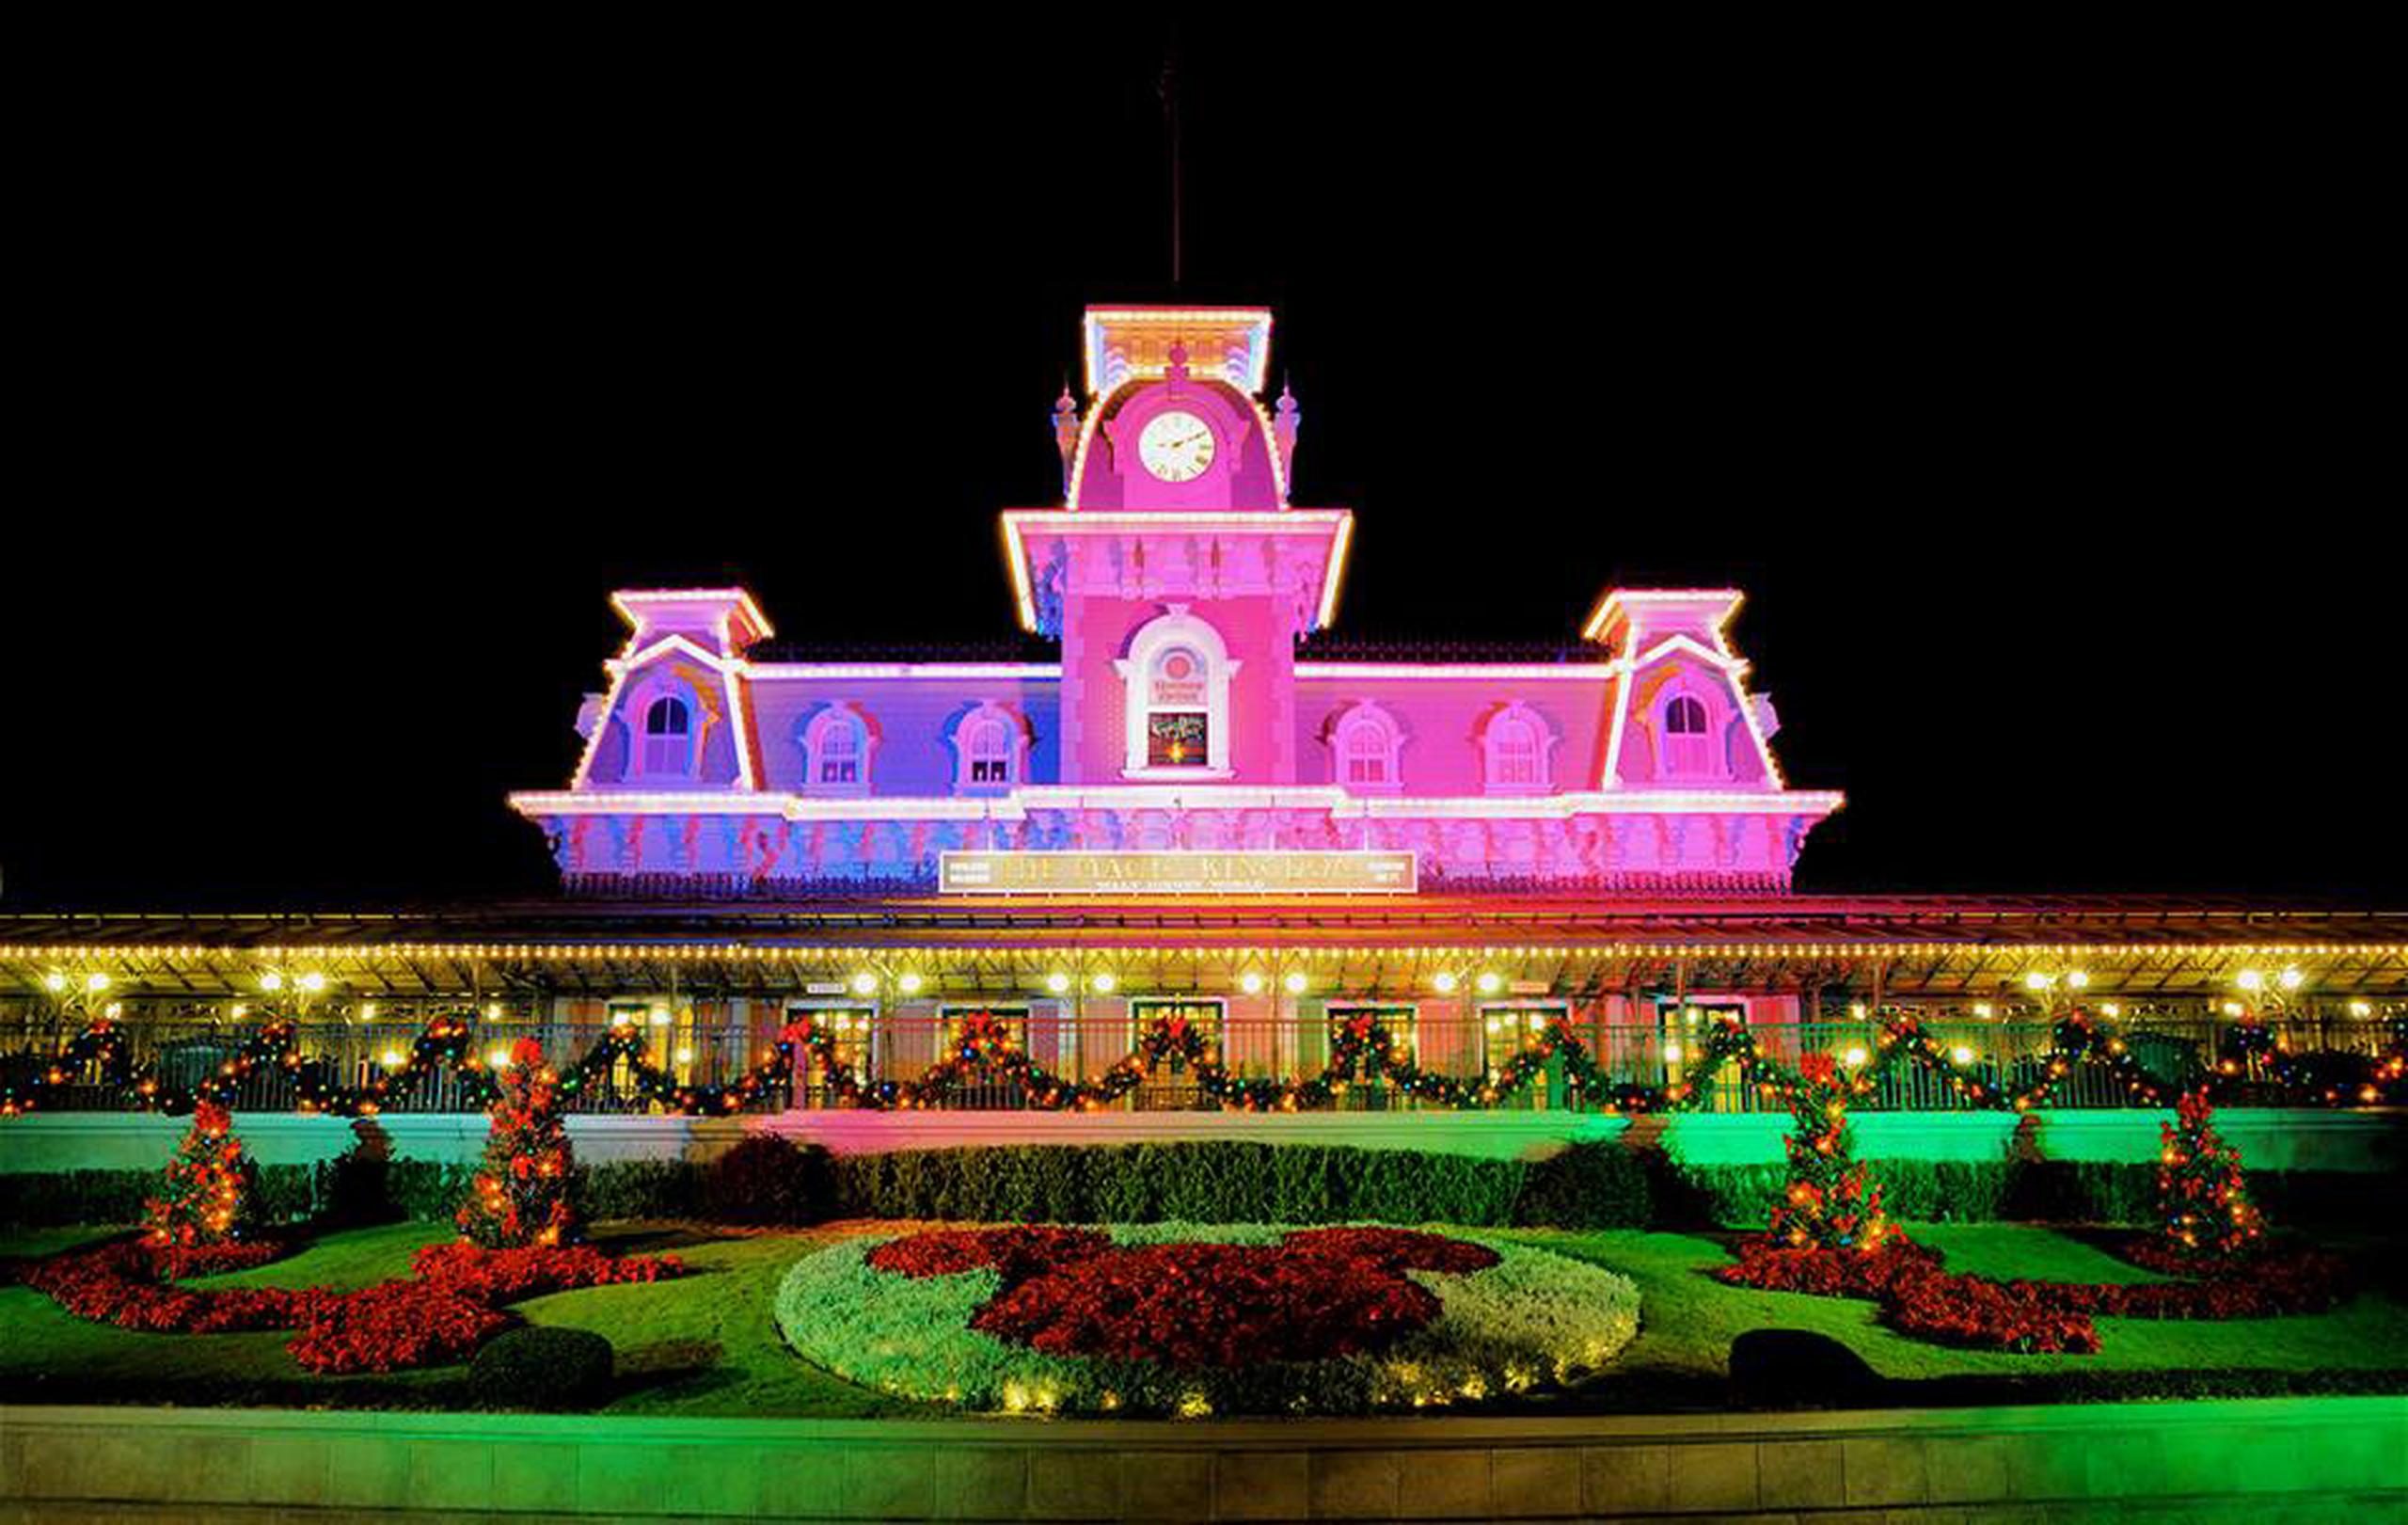 El Train Station y Floral Mickey en la entrada de Magic Kingdom. (Facebook / Walt Disney World)